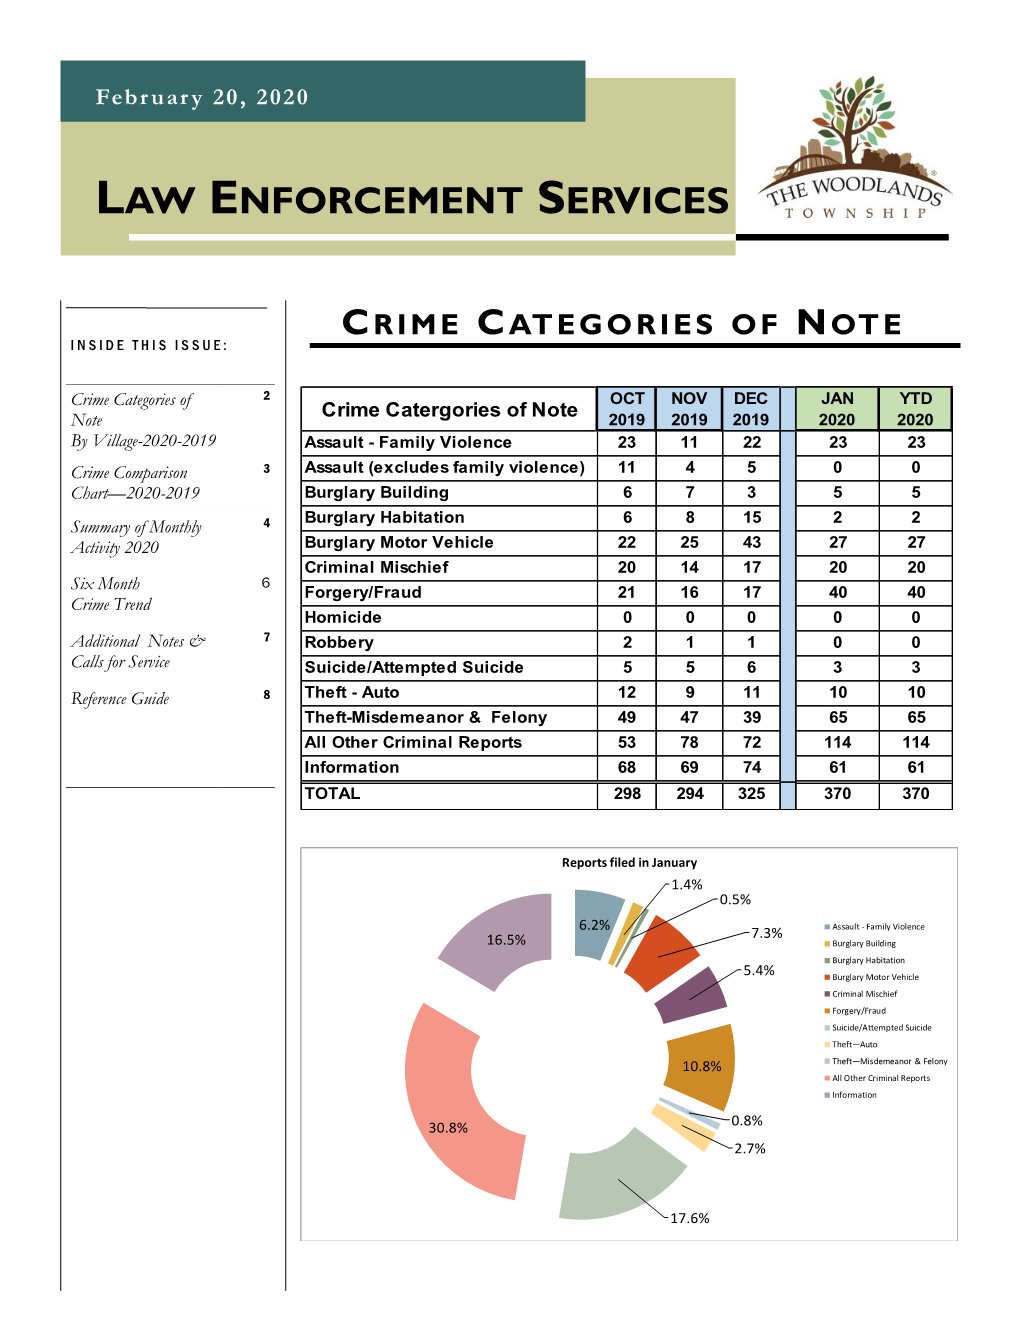 Law Enforcement Services